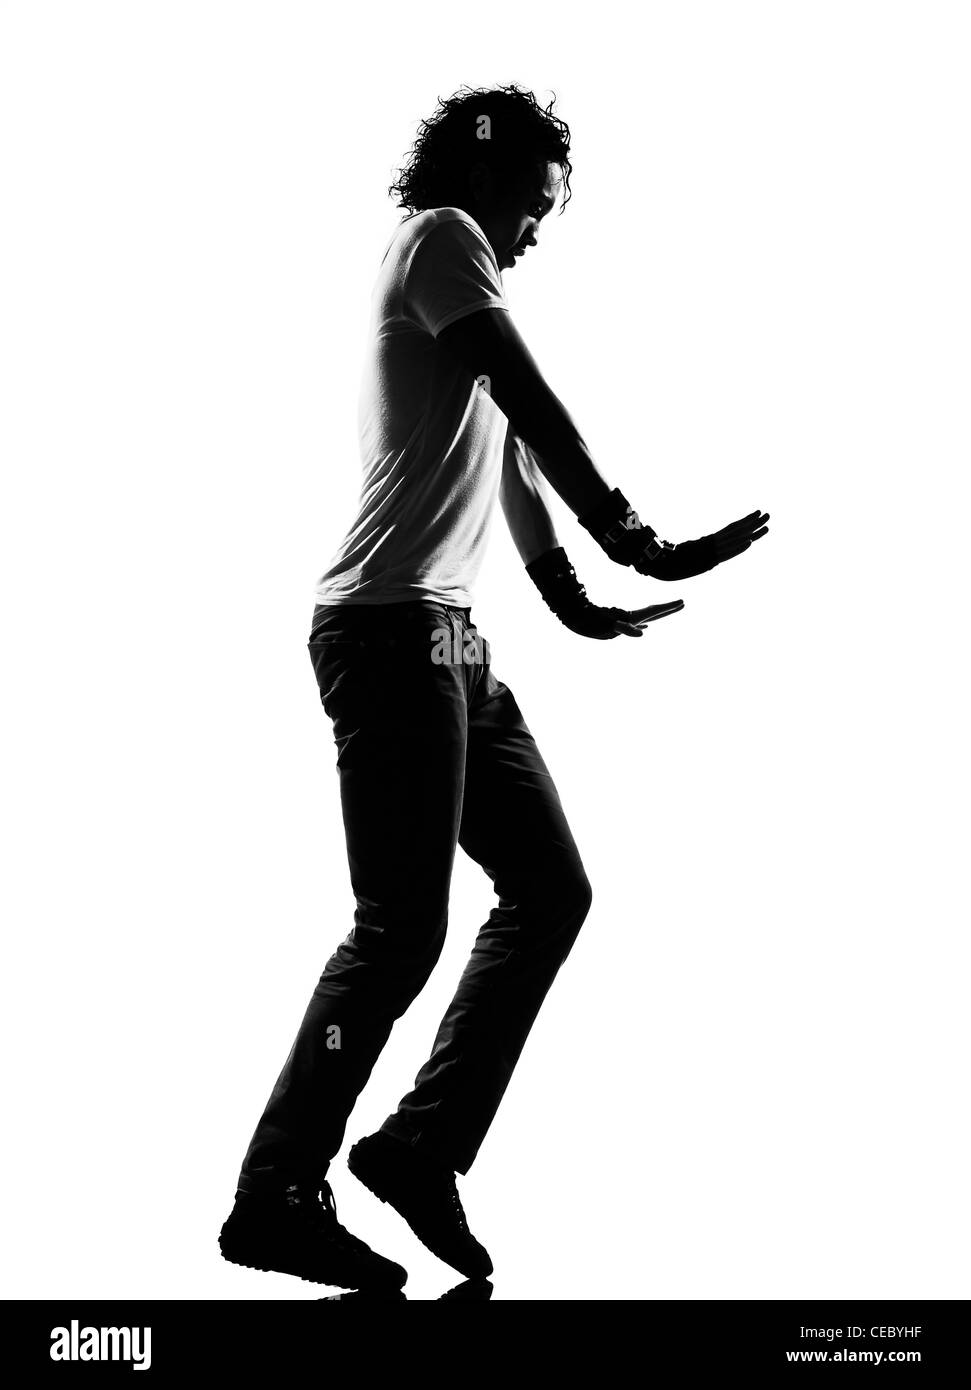 Lunghezza completa silhouette di un giovane ballerino di danza moonwalk funky hip hop r&b su studio isolato sfondo bianco Foto Stock